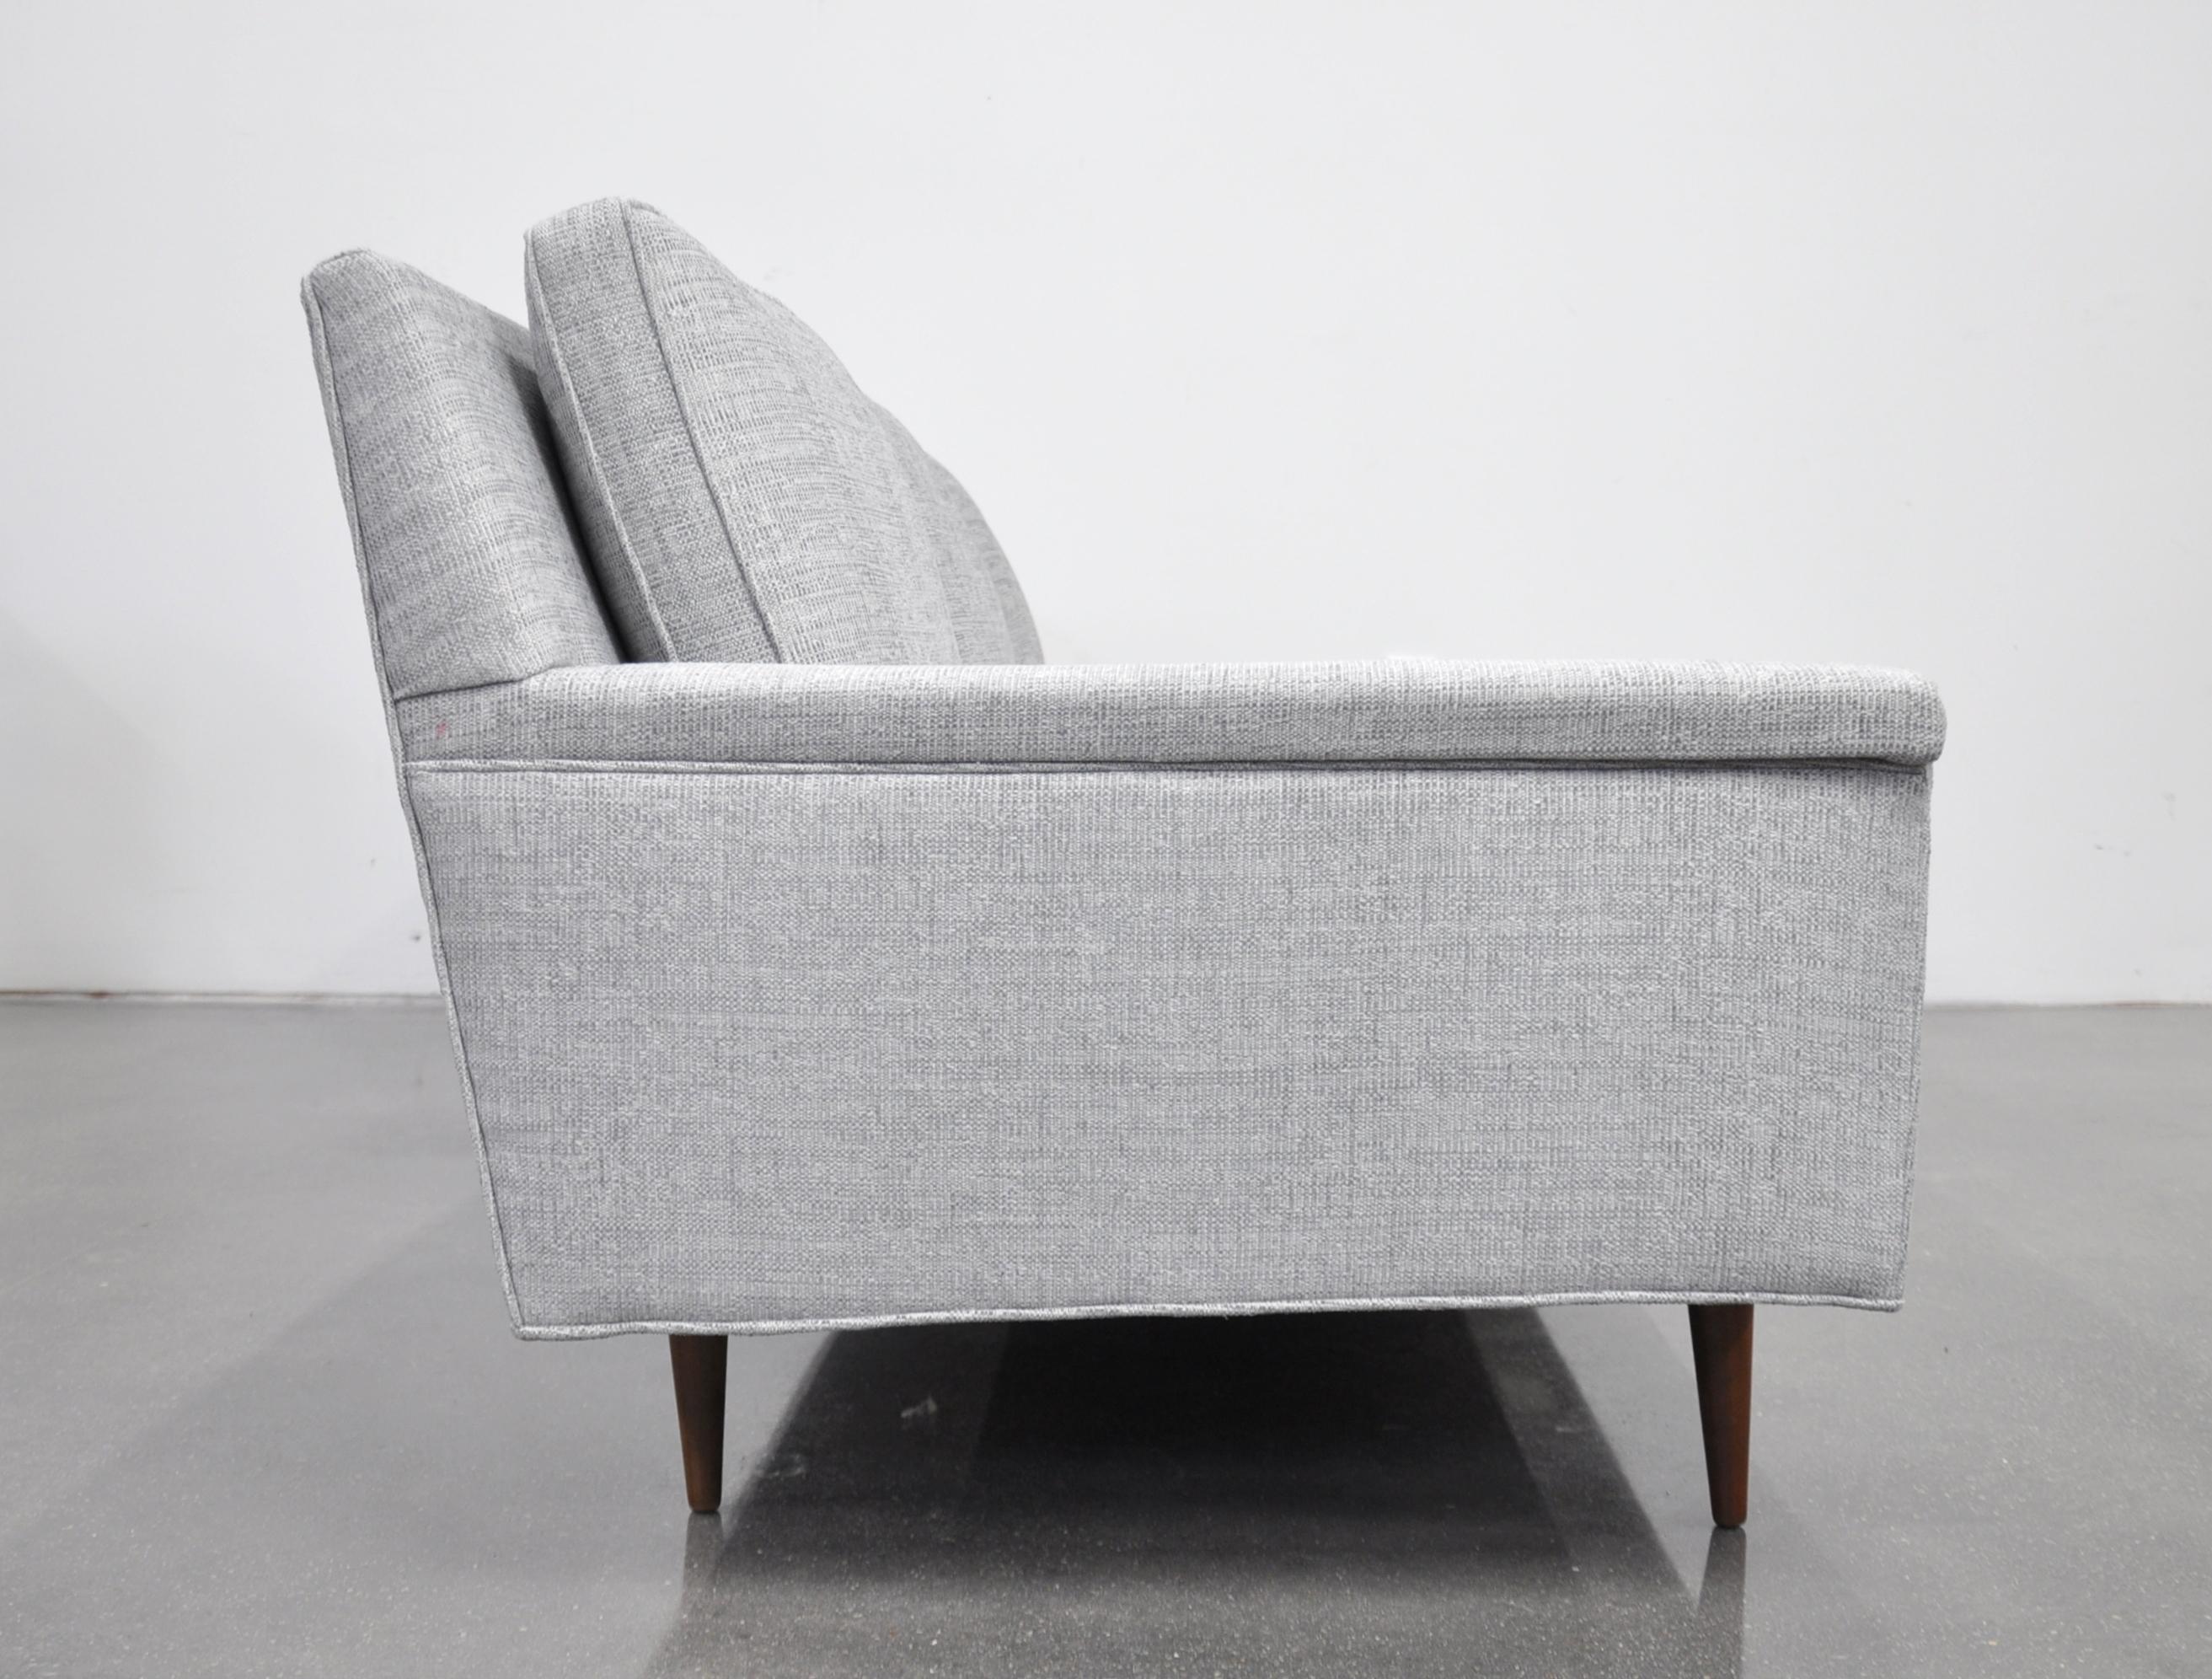 Fabric Milo Baughman for Thayer Coggin Gray Sofa